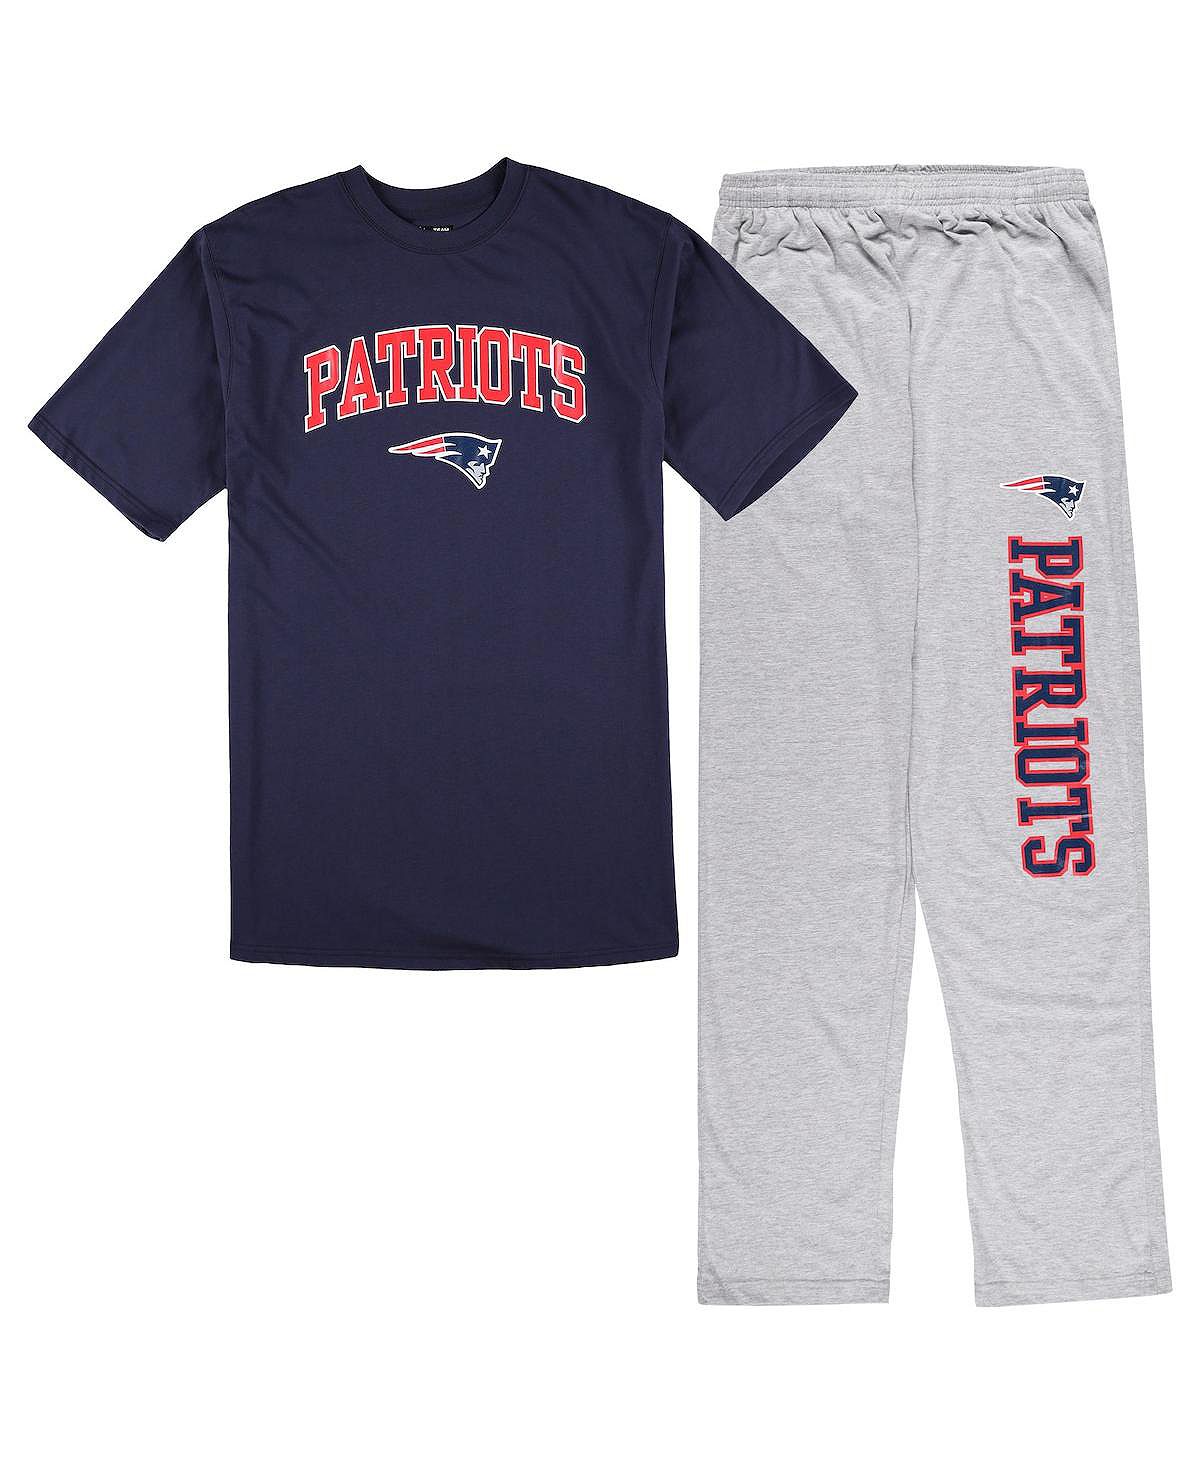 Мужской комплект для сна темно-синего цвета, цвета Хизер Грей, футболка New England Patriots Big and Tall и пижамные штаны Concepts Sport ингленд дж эликсир ненависти